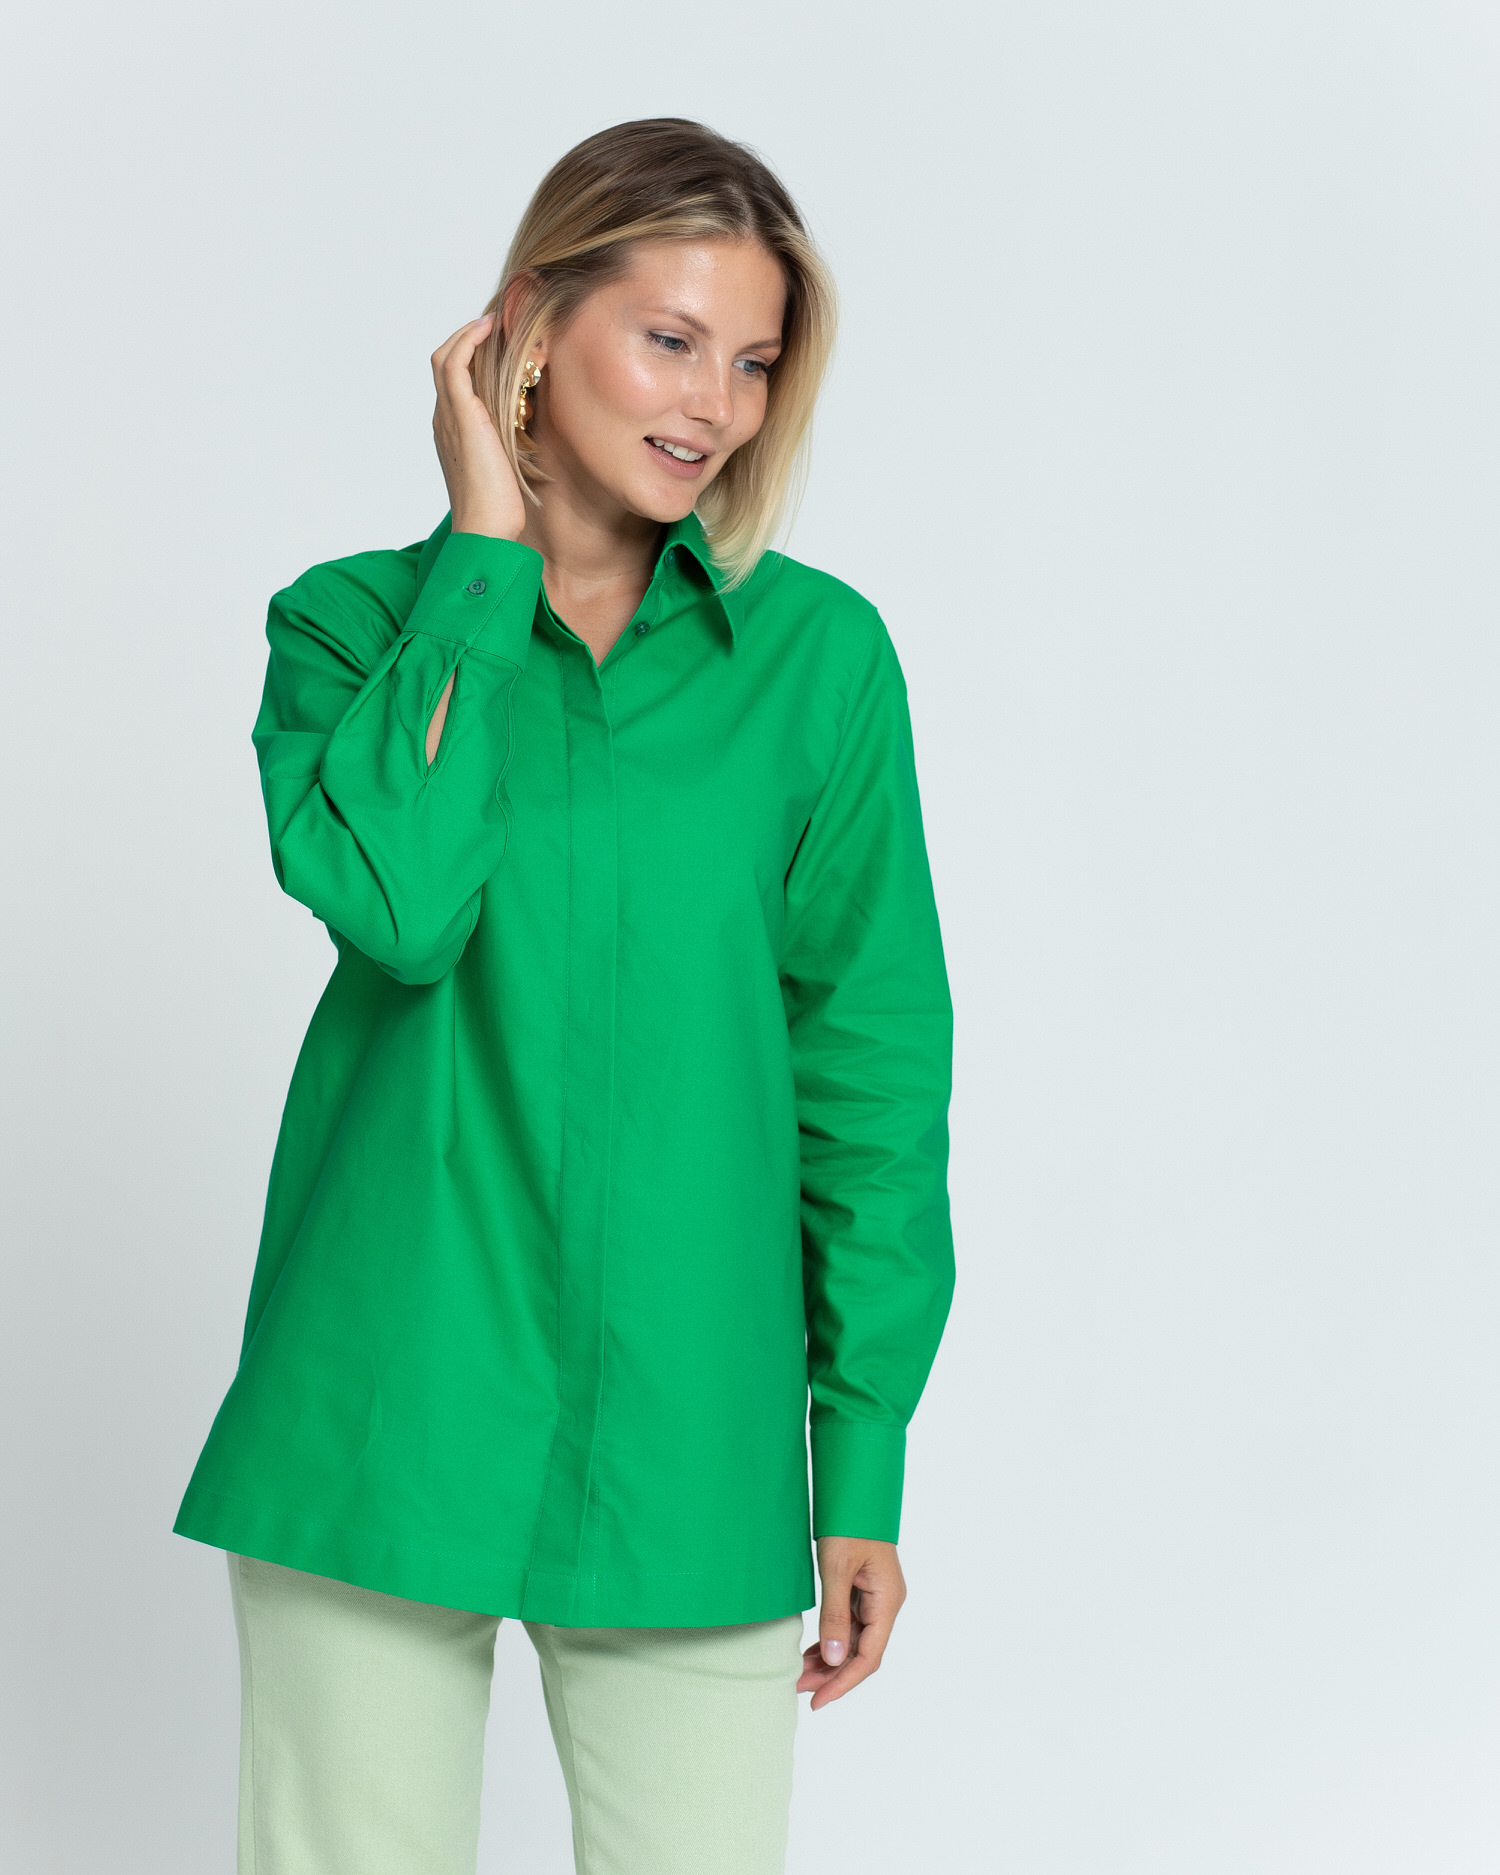 Женская рубашка с универсальным манжетом зелёная - 8375 от byME 